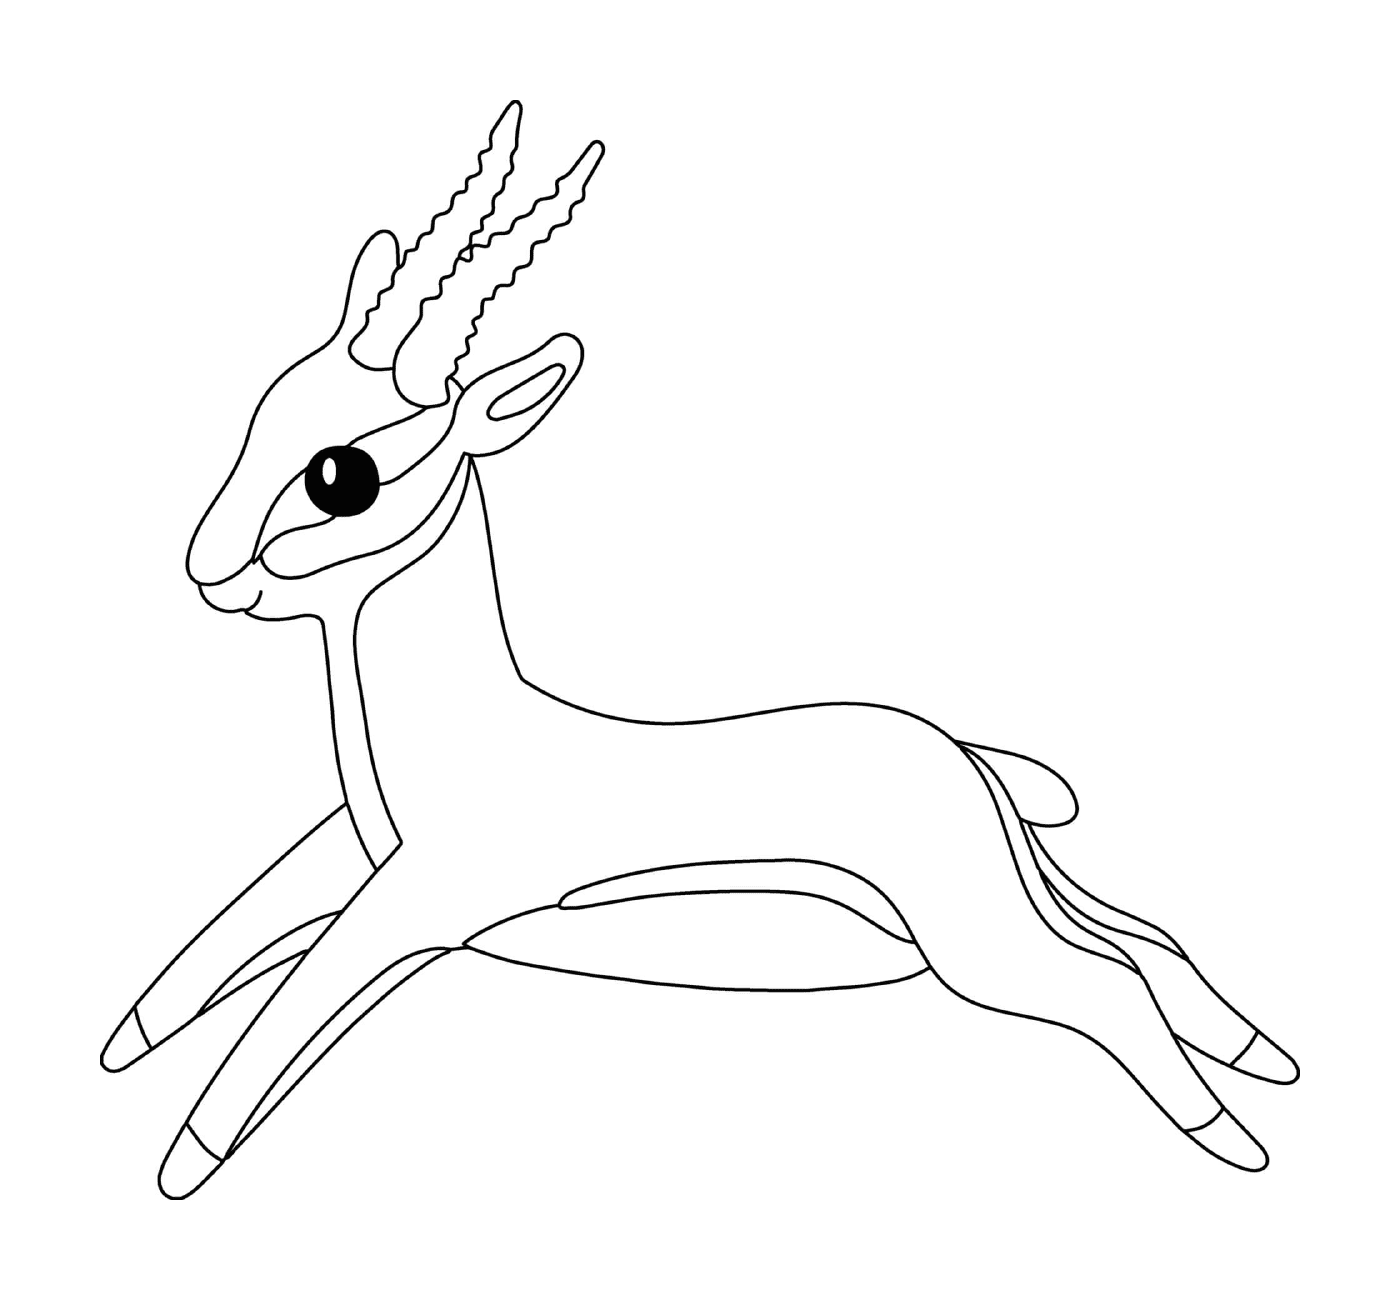  Antelope com chifres longos em movimento 